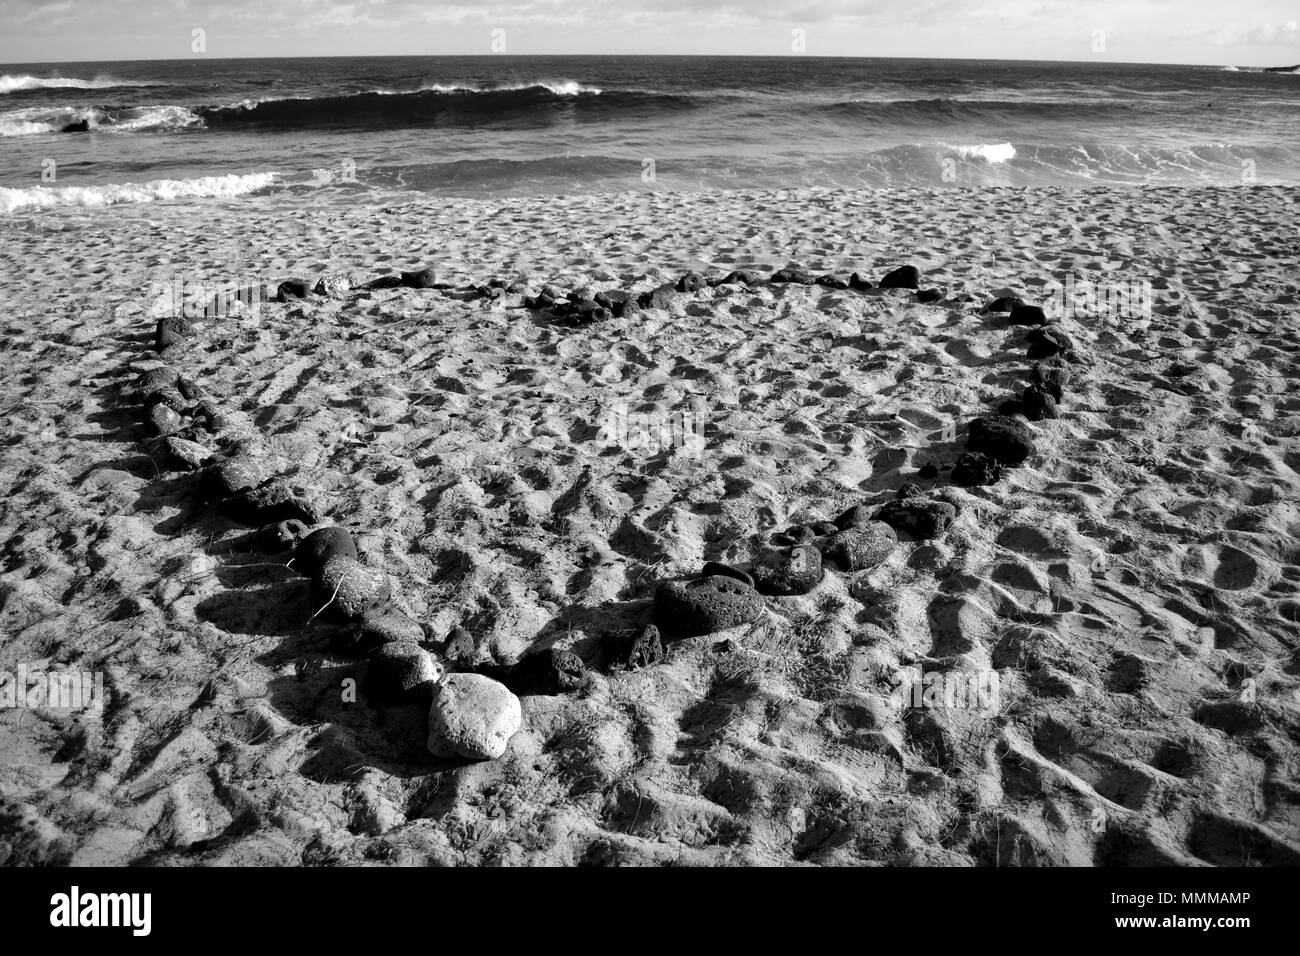 A heart shaped with rocks on the sands of Shipwreck Beach, Poipu, Kauai, Hawaii, USA Stock Photo